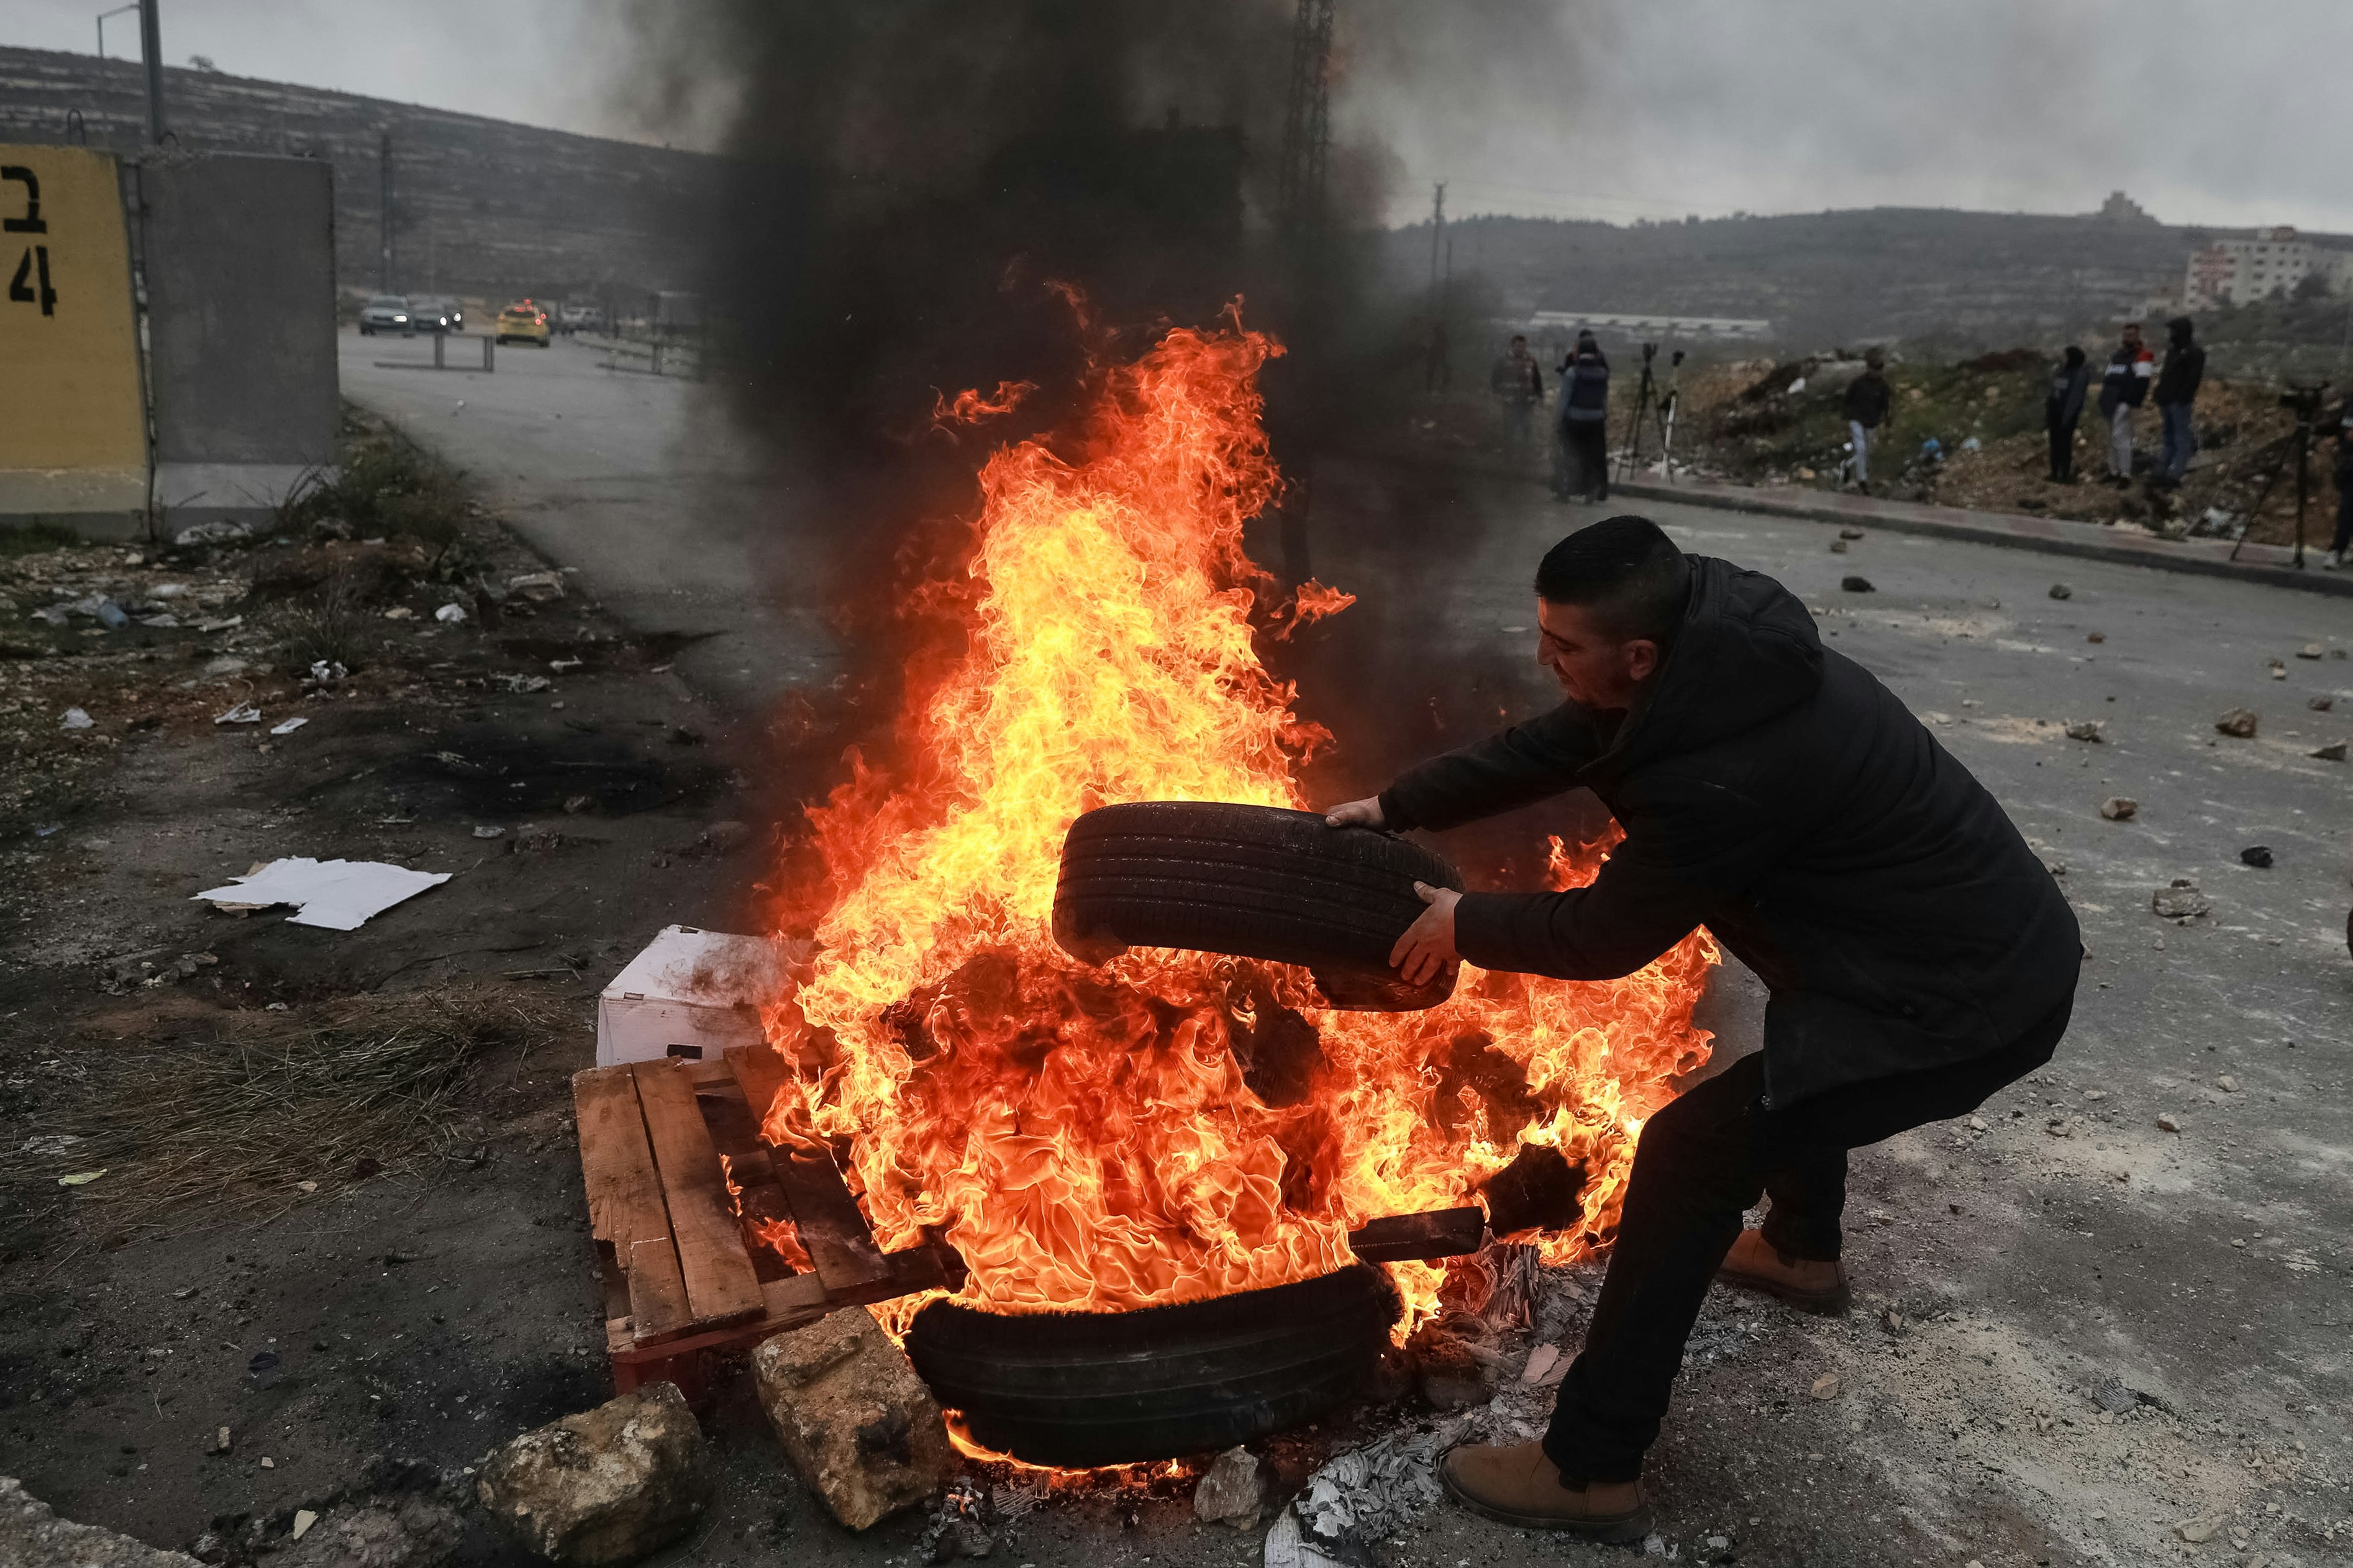 РАМАЛЛА, ЗАПАДНЫЙ БАНК - 09 ФЕВРАЛЯ: Группа палестинцев сжигает шины во время акции протеста, чтобы показать реакцию на смерть трех палестинцев по имени Ашраф Мубаслат, Адхам Мабрука и Мохаммад Дахил, убитых в результате обстрела израильскими войсками их автомобиля в Наблусе, февраль 9 сентября 2022 года в Рамаллахе, Западный берег.  (Фото Иссама Римави/Агентство Анадолу через Getty Images)